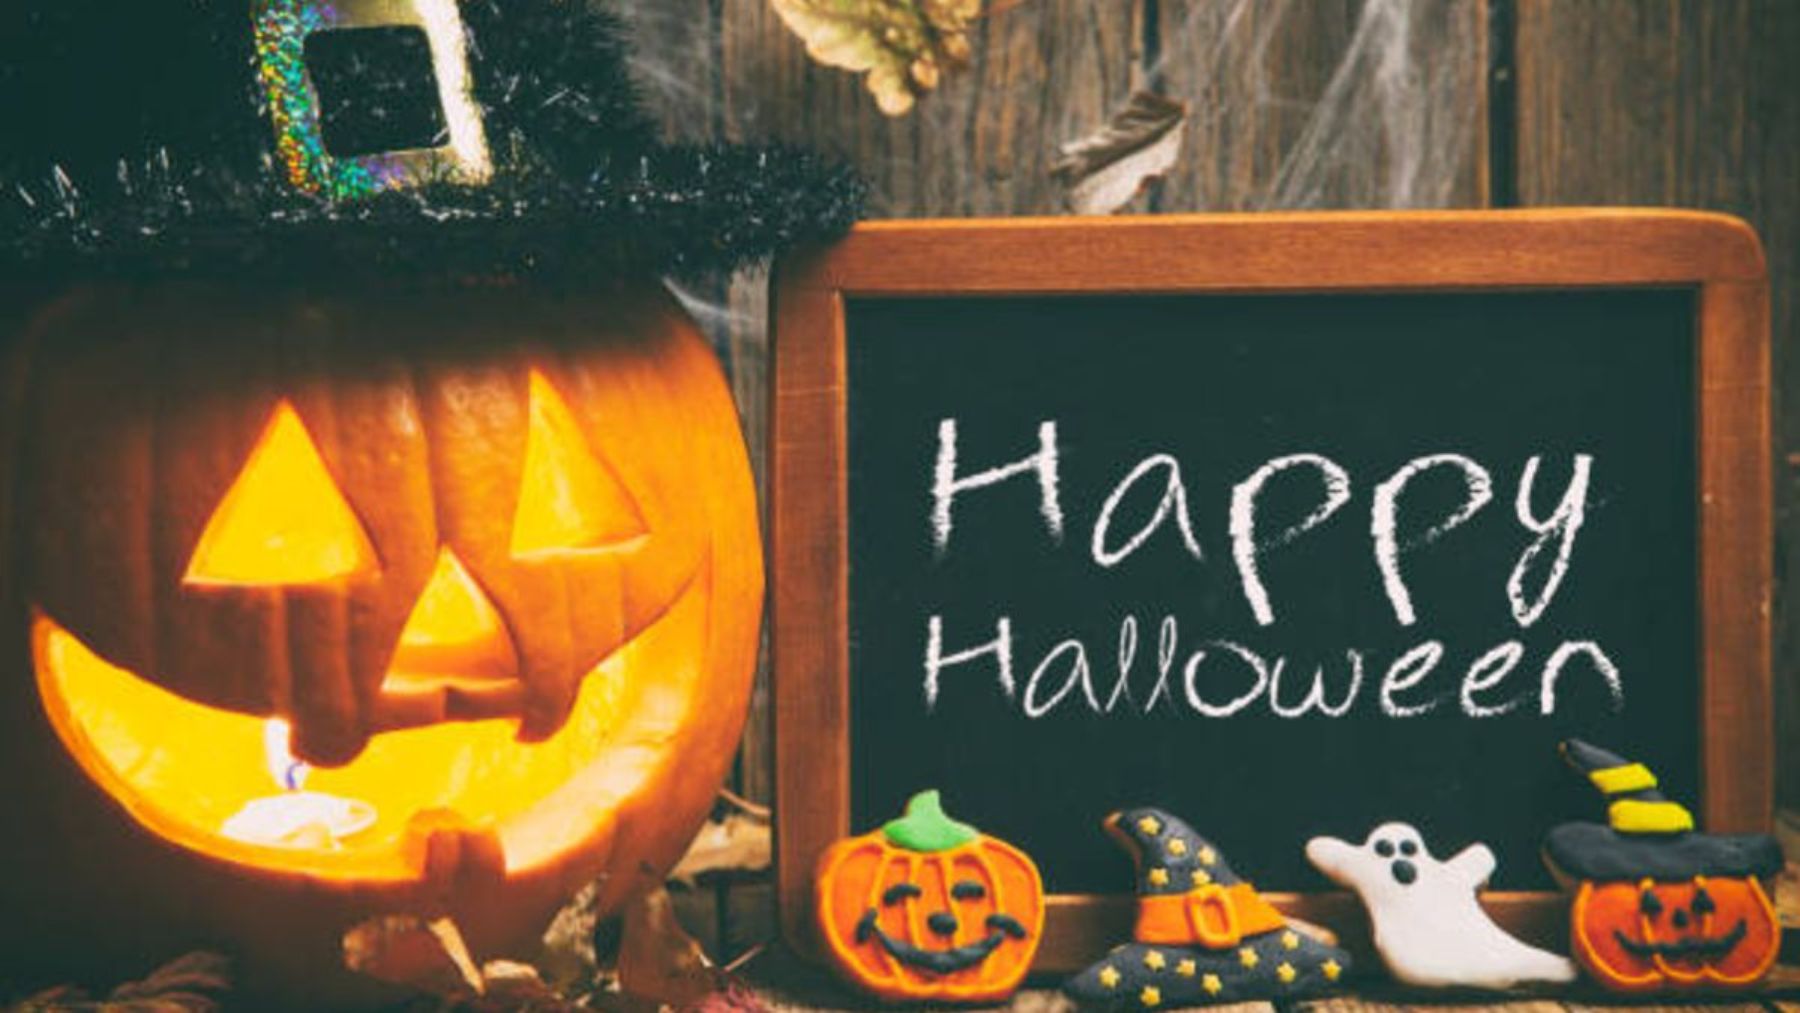 Descubre frases e imágenes graciosas para felicitar Halloween